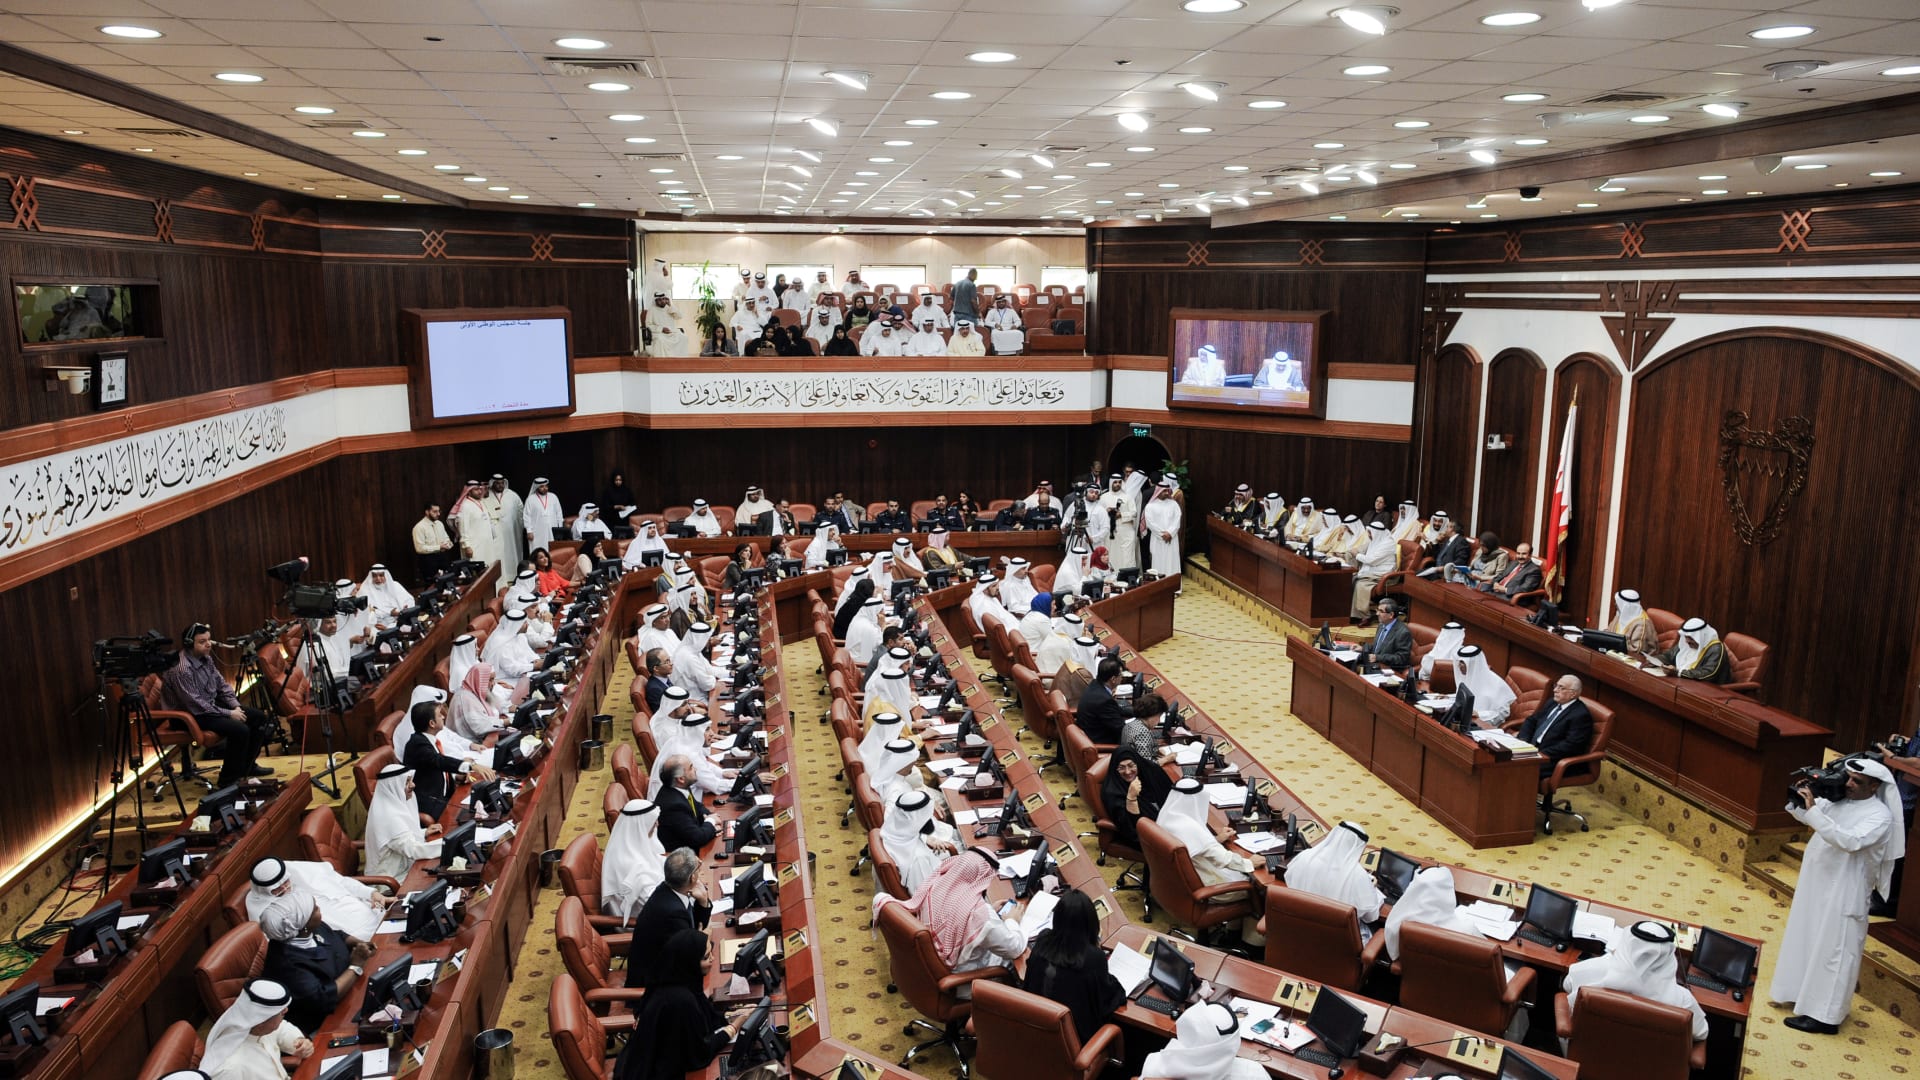 مجلس النواب في البحرين: مخطط قطري صفوي لزعزعة الأمن والاستقرار في دولتنا